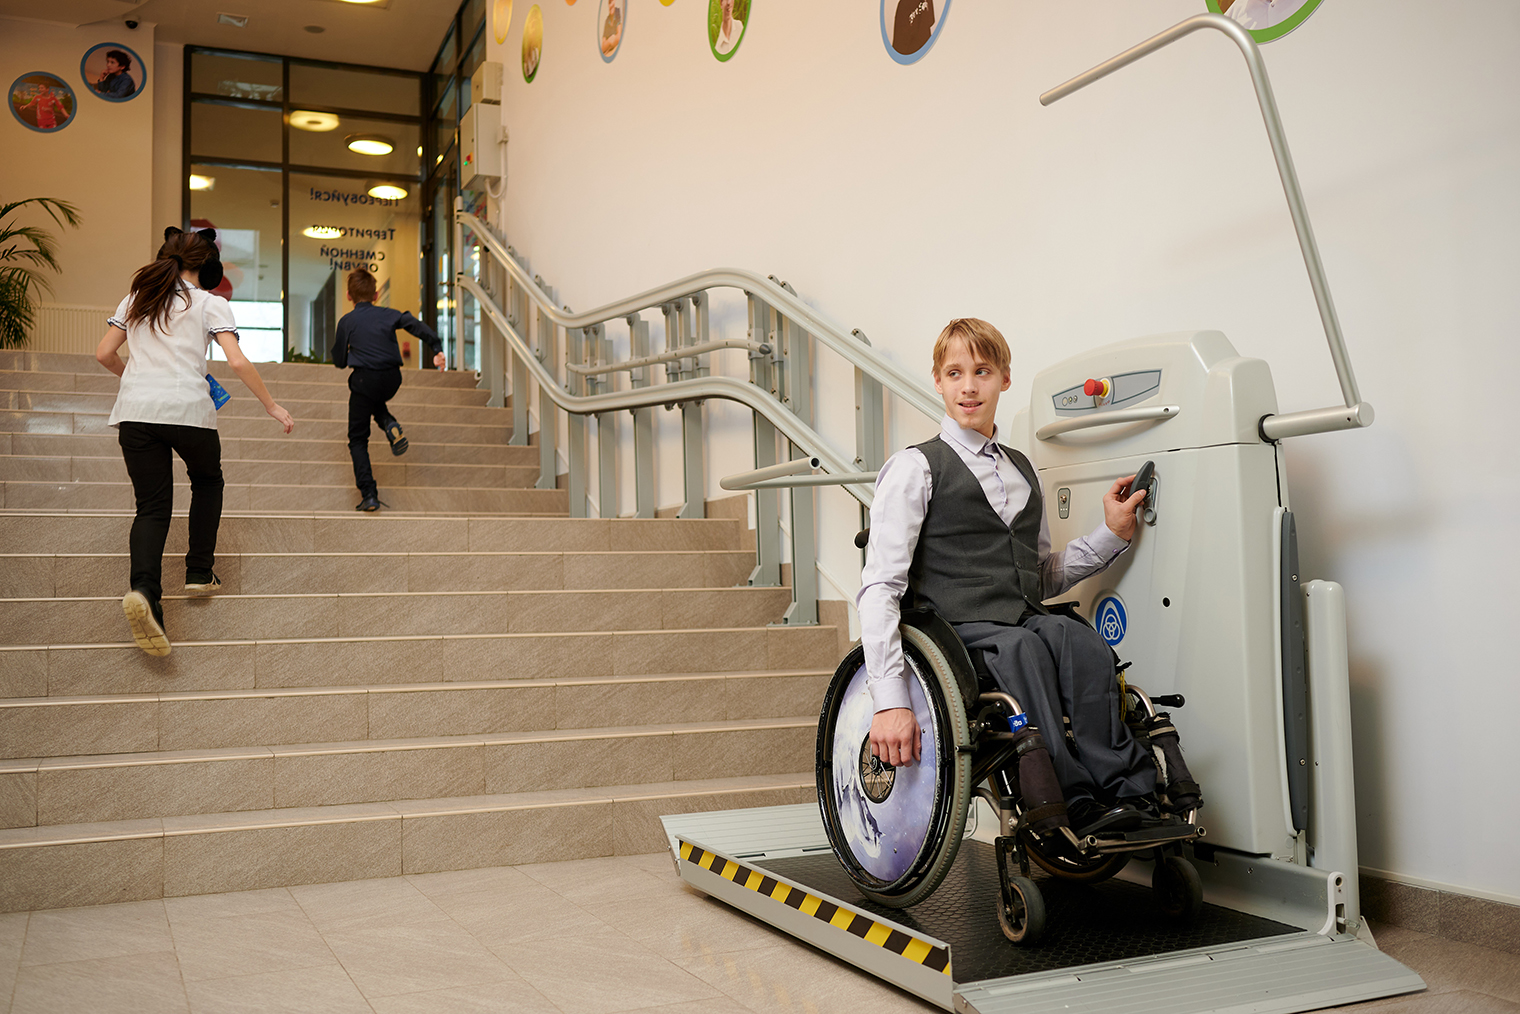 В здании школы есть пандусы, лифты и подъемники, чтобы дети на инвалидных колясках могли свободно перемещаться